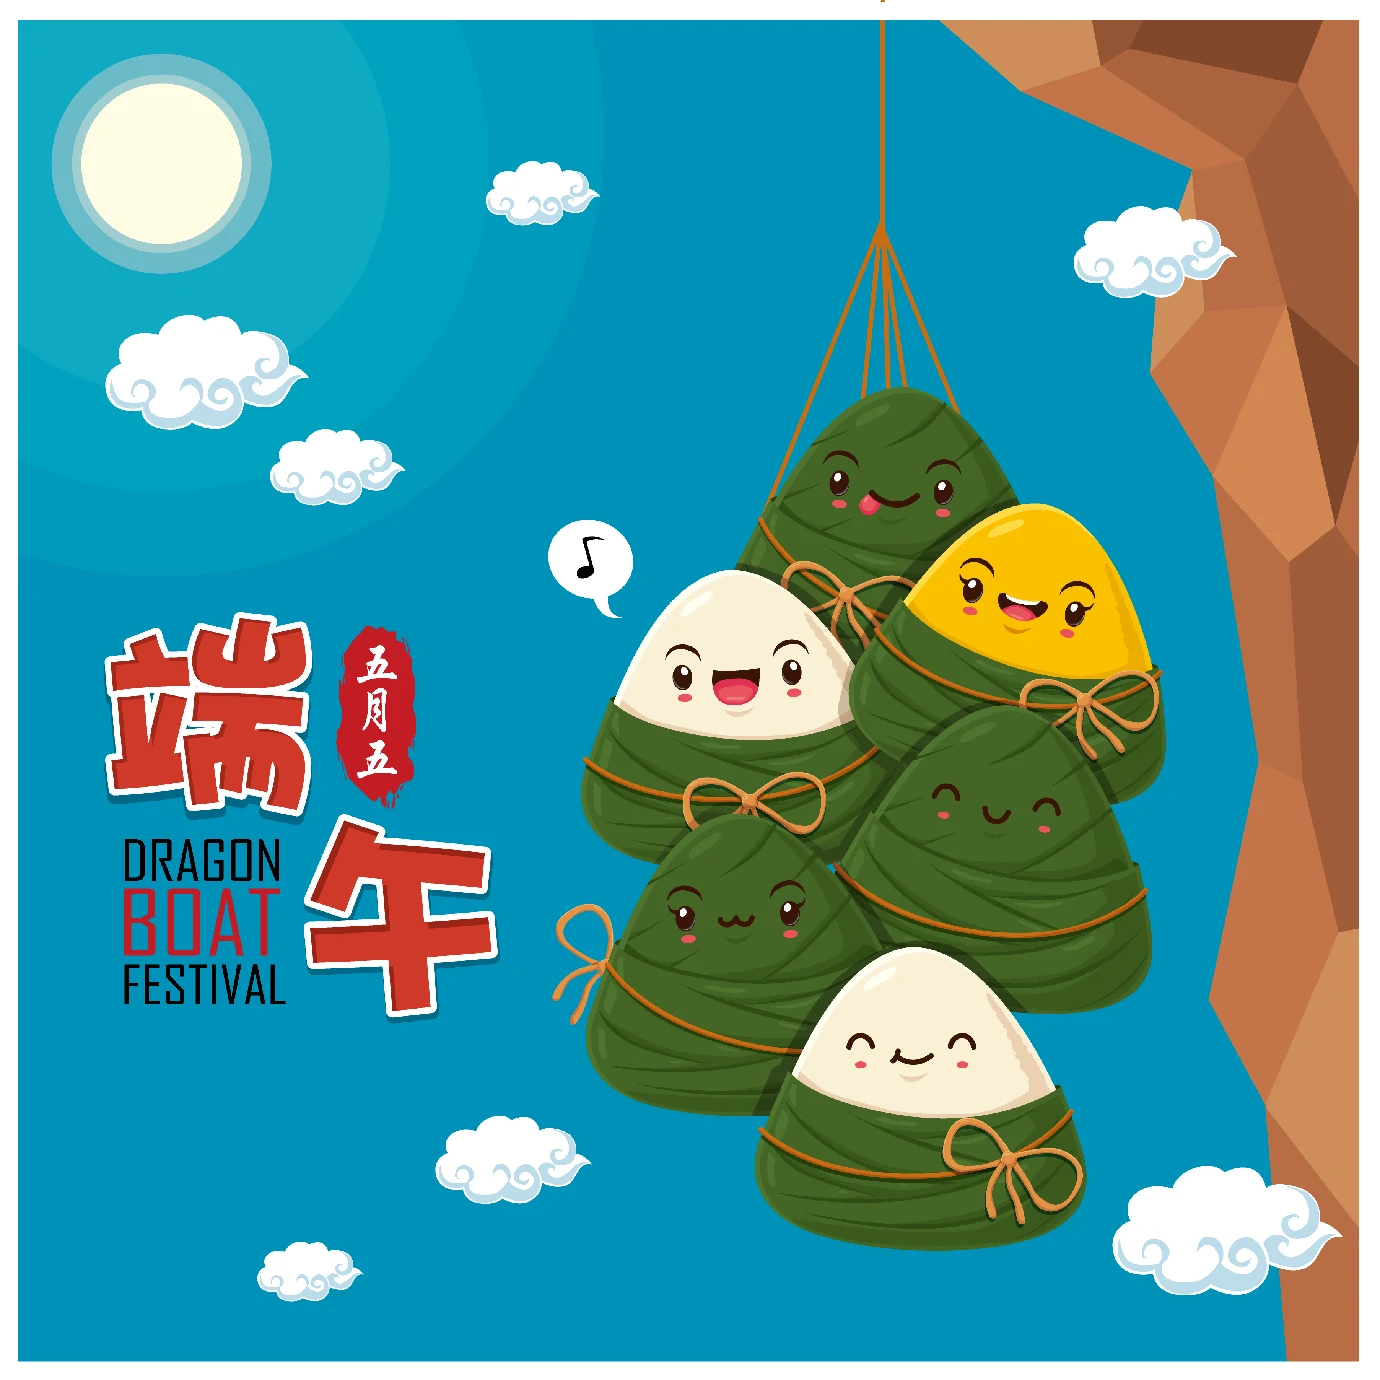 中国传统节日卡通手绘端午节赛龙舟粽子插画海报AI矢量设计素材【076】